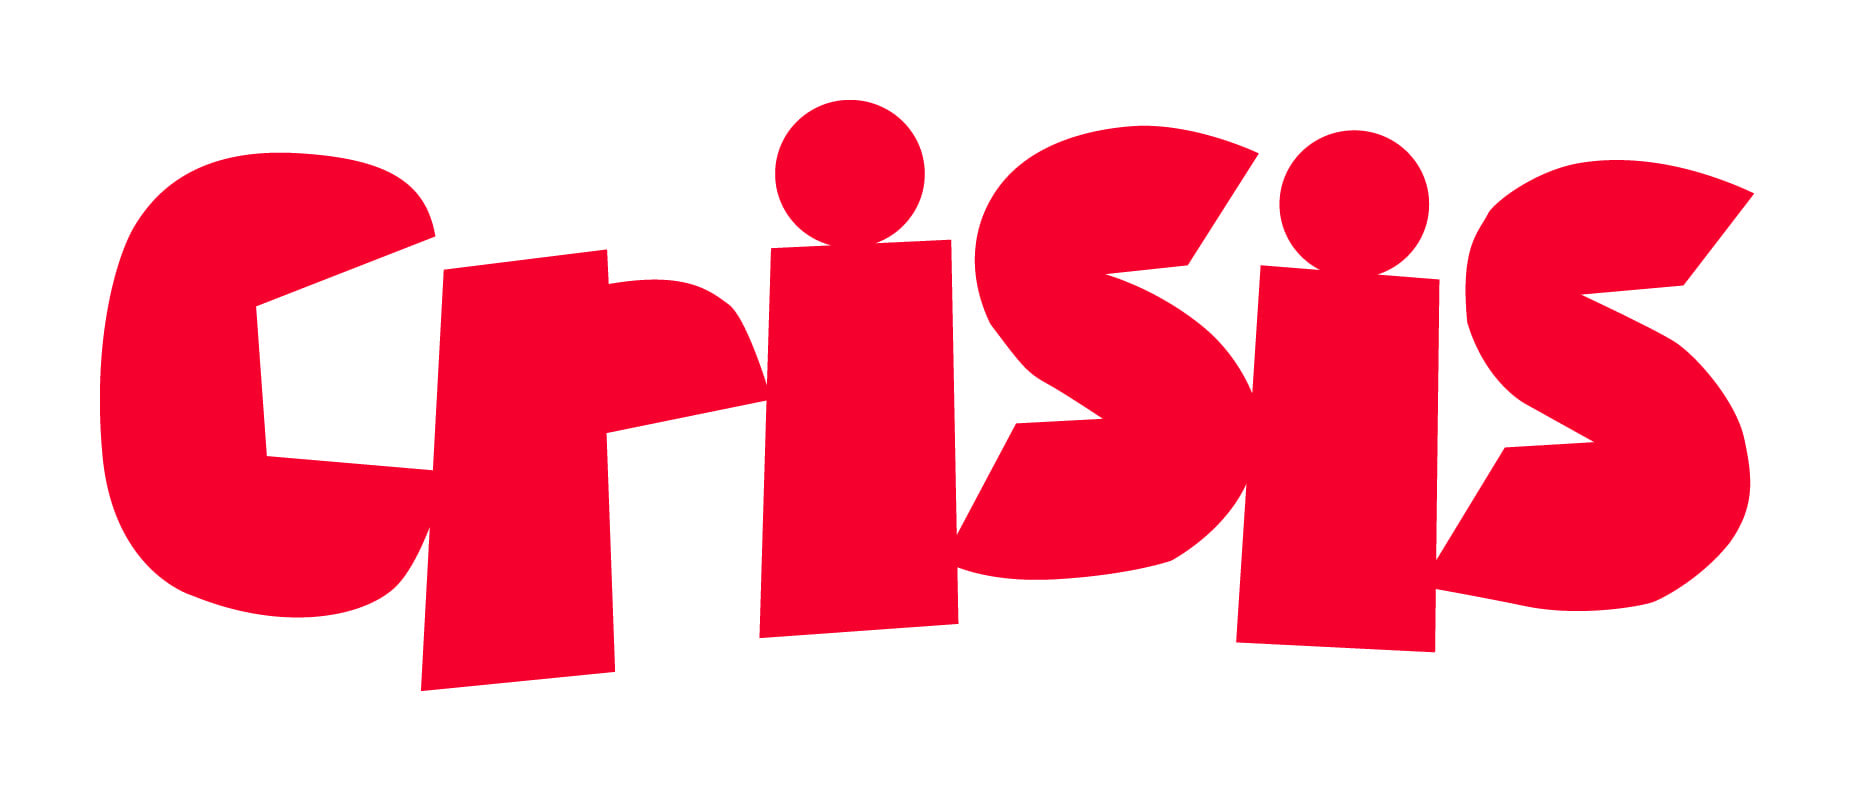 crisis-logo.jpg